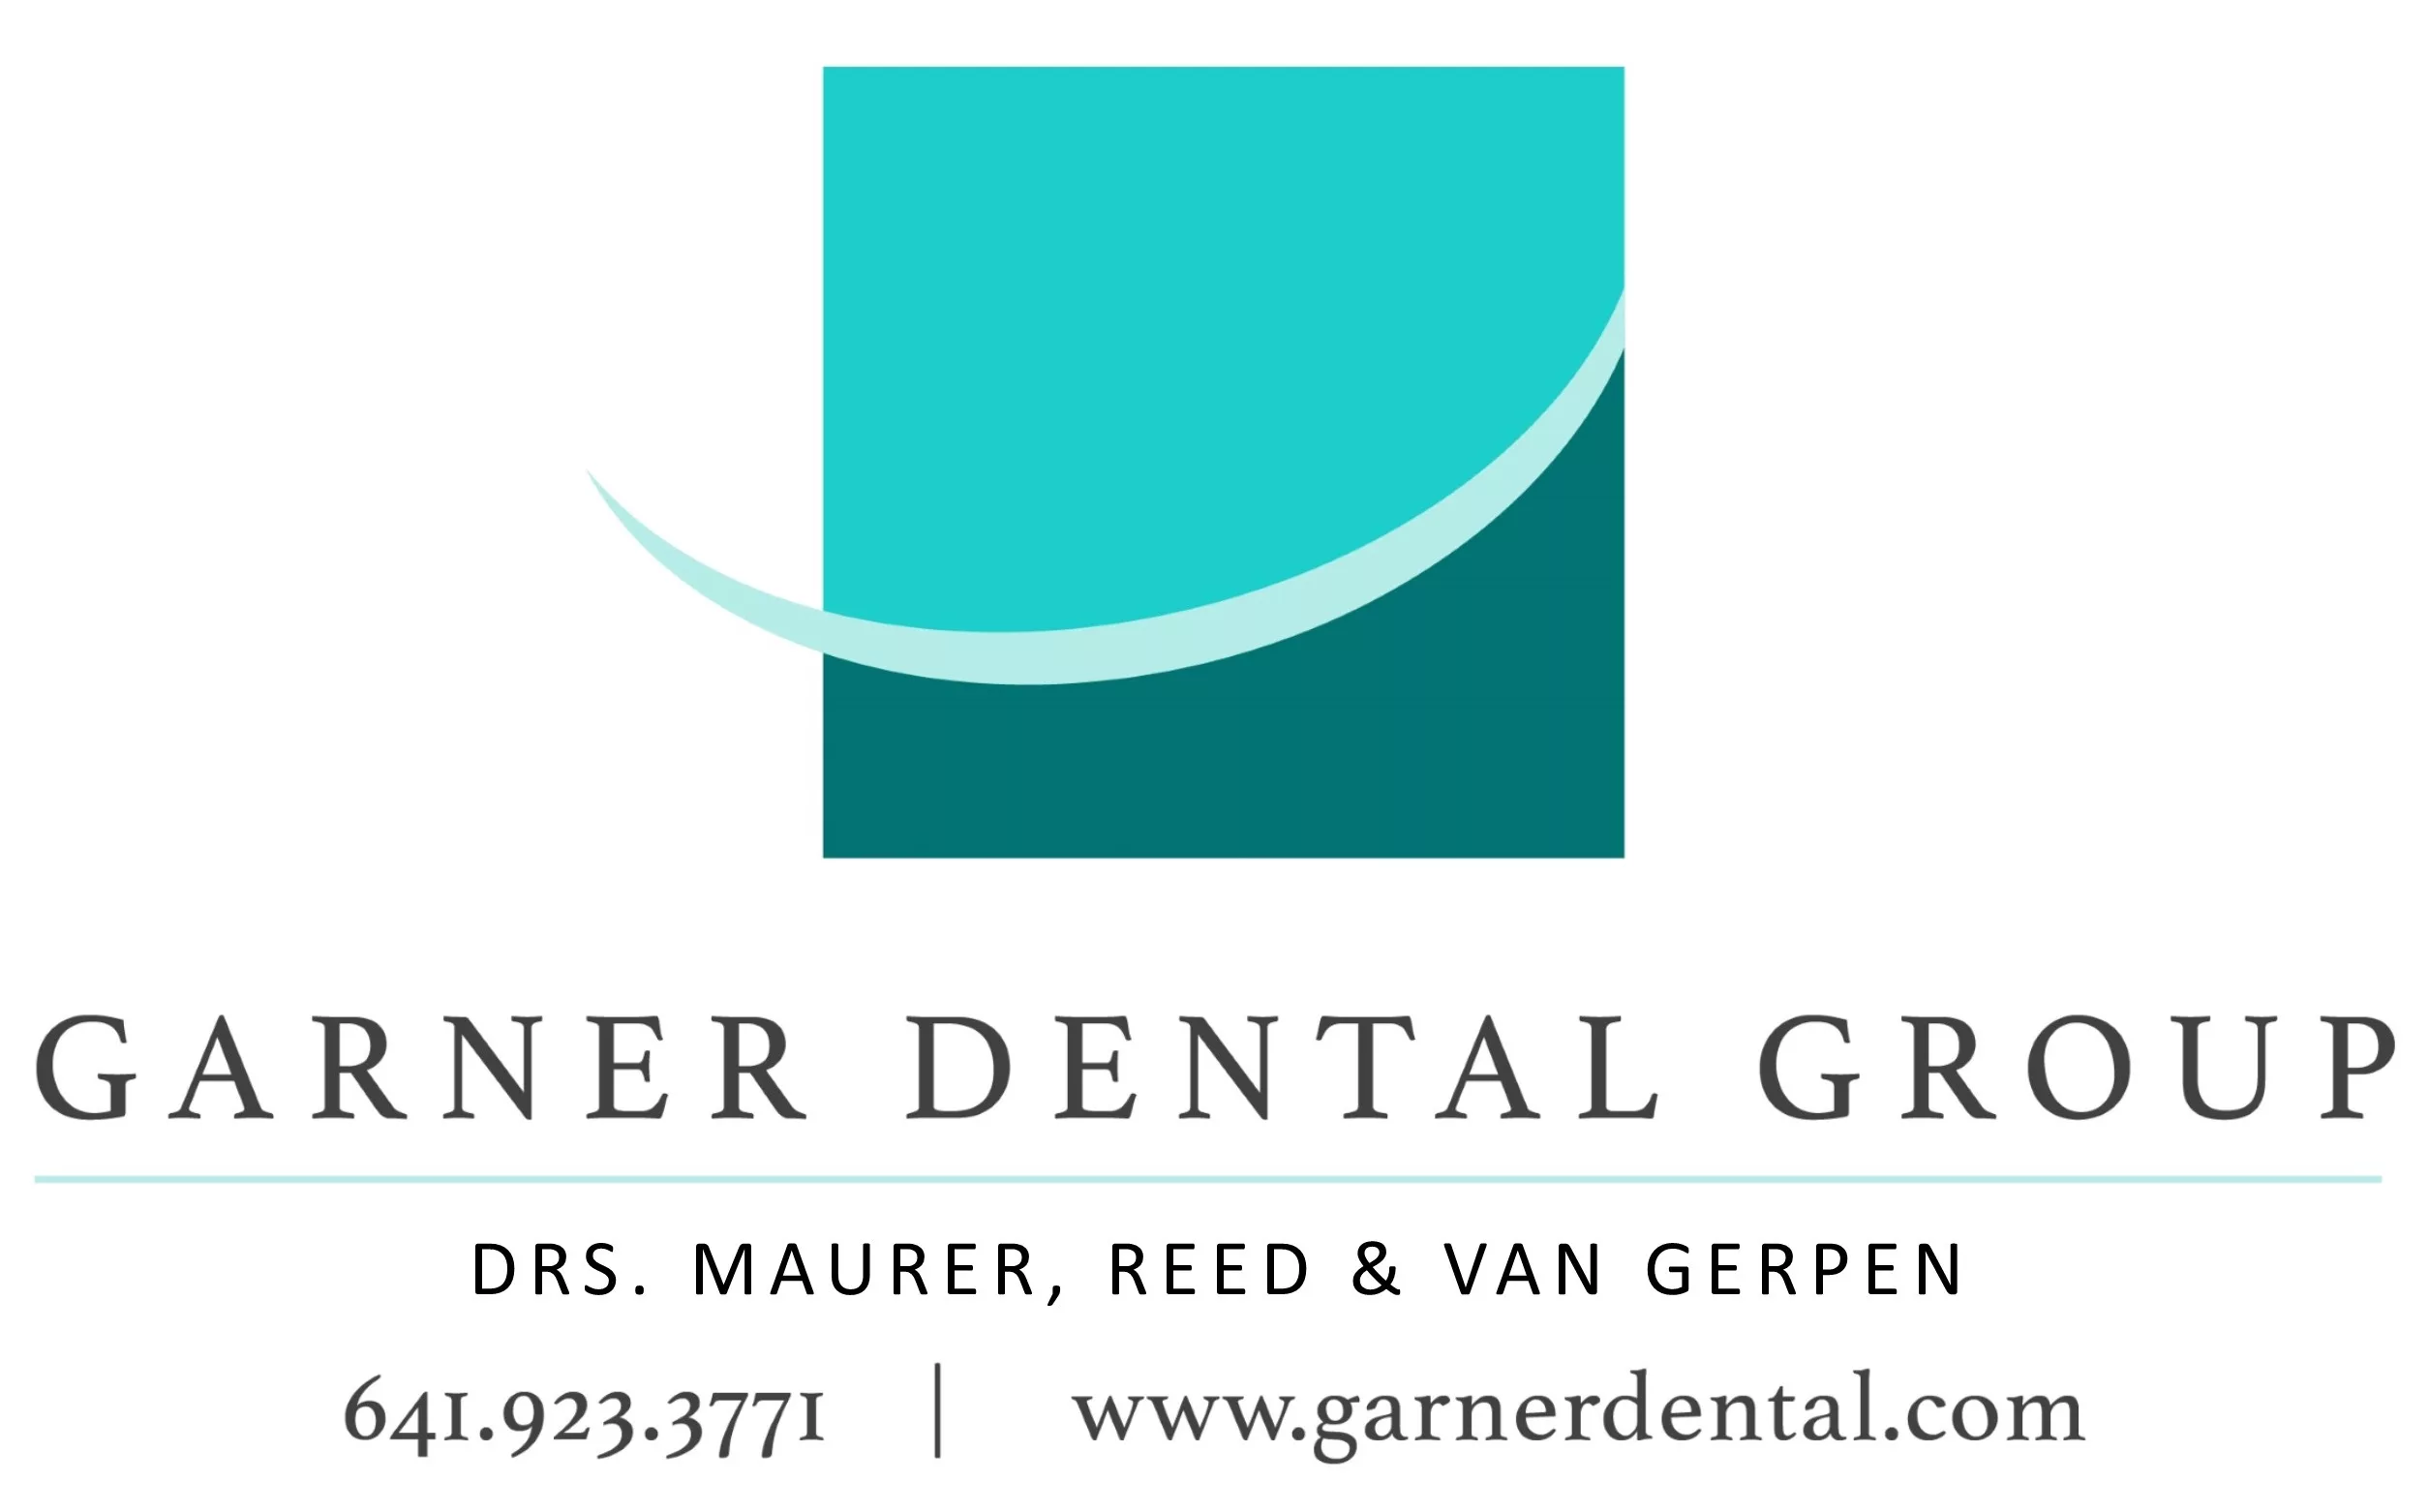 Garner Dental Group